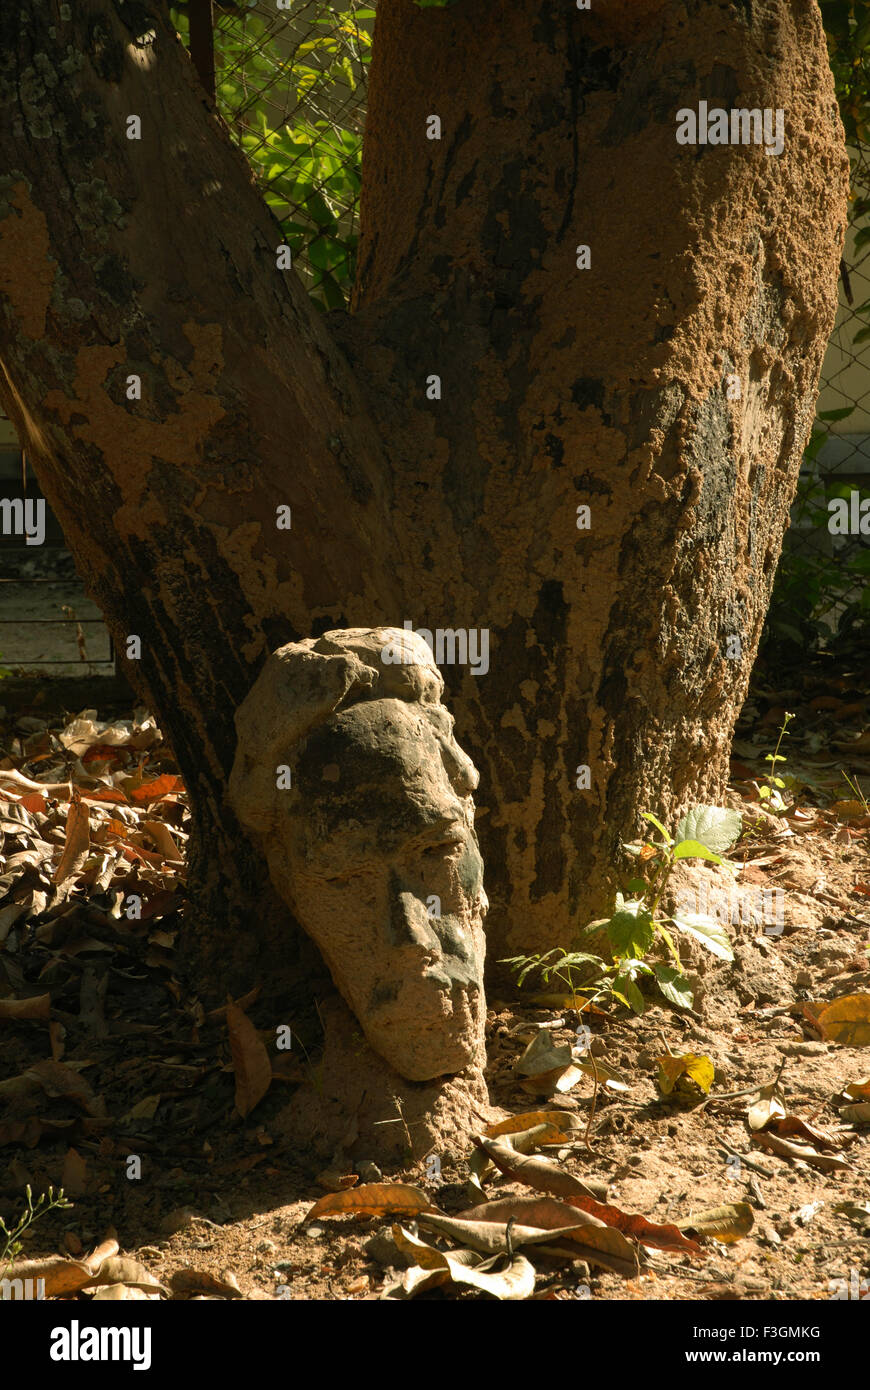 Escultura de piedra debajo del tronco del árbol, India, Asia Foto de stock